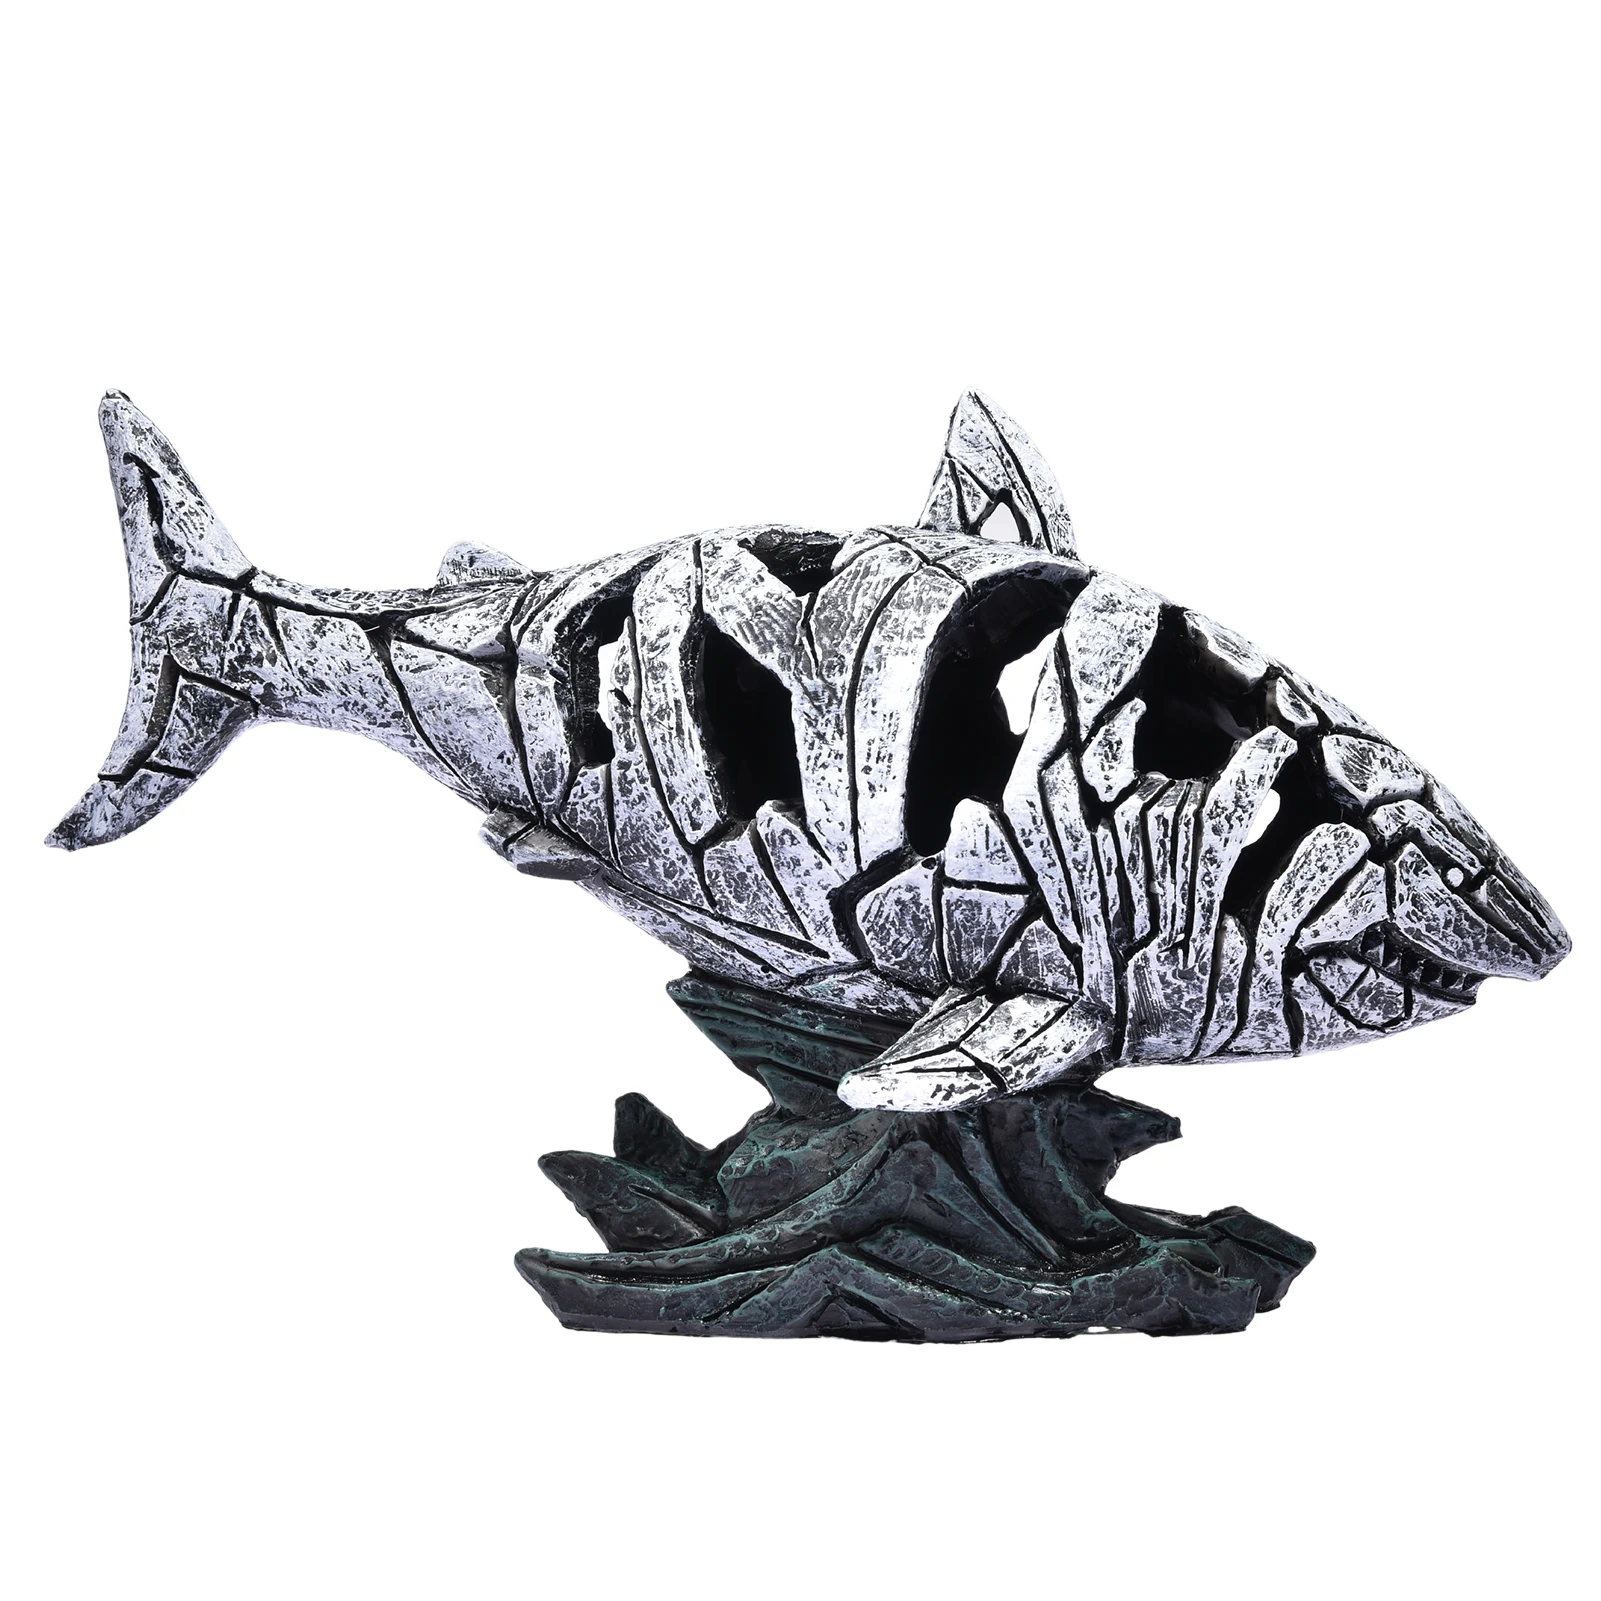 Edinstveno Novo Krekirana Shark Kip Shark Sodobne Živalske Skulpture Okras za notranje zadeve Namizni Okras in Darila za Rojstni dan